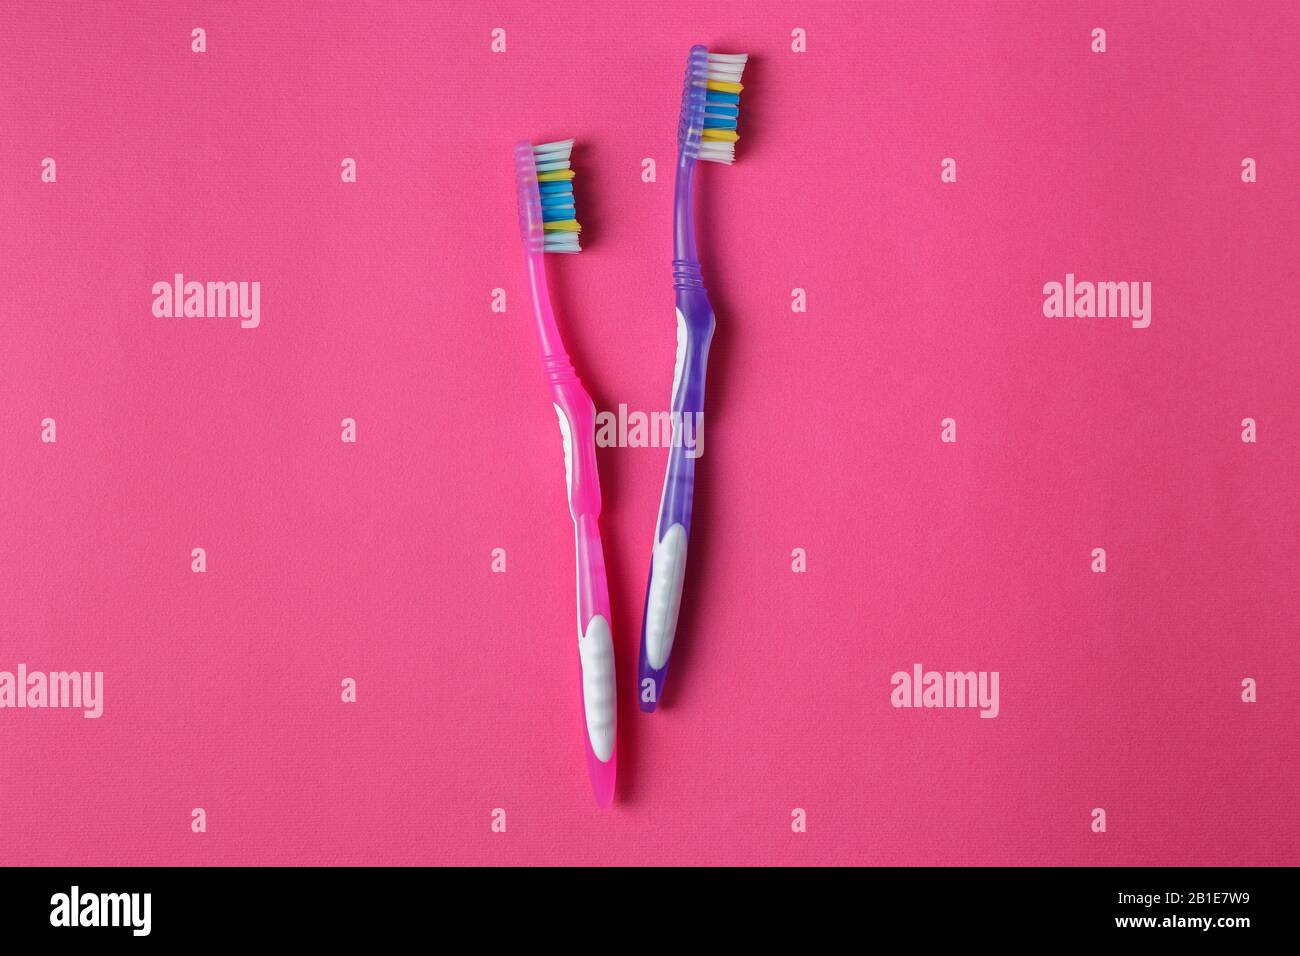 Die alten pinkfarbenen und violetten Zahnbürsten sind auf dem rosafarbenen Hintergrund abgelaufen (beschädigt). Kunststoff-Verschmutzungskonzept Stockfoto